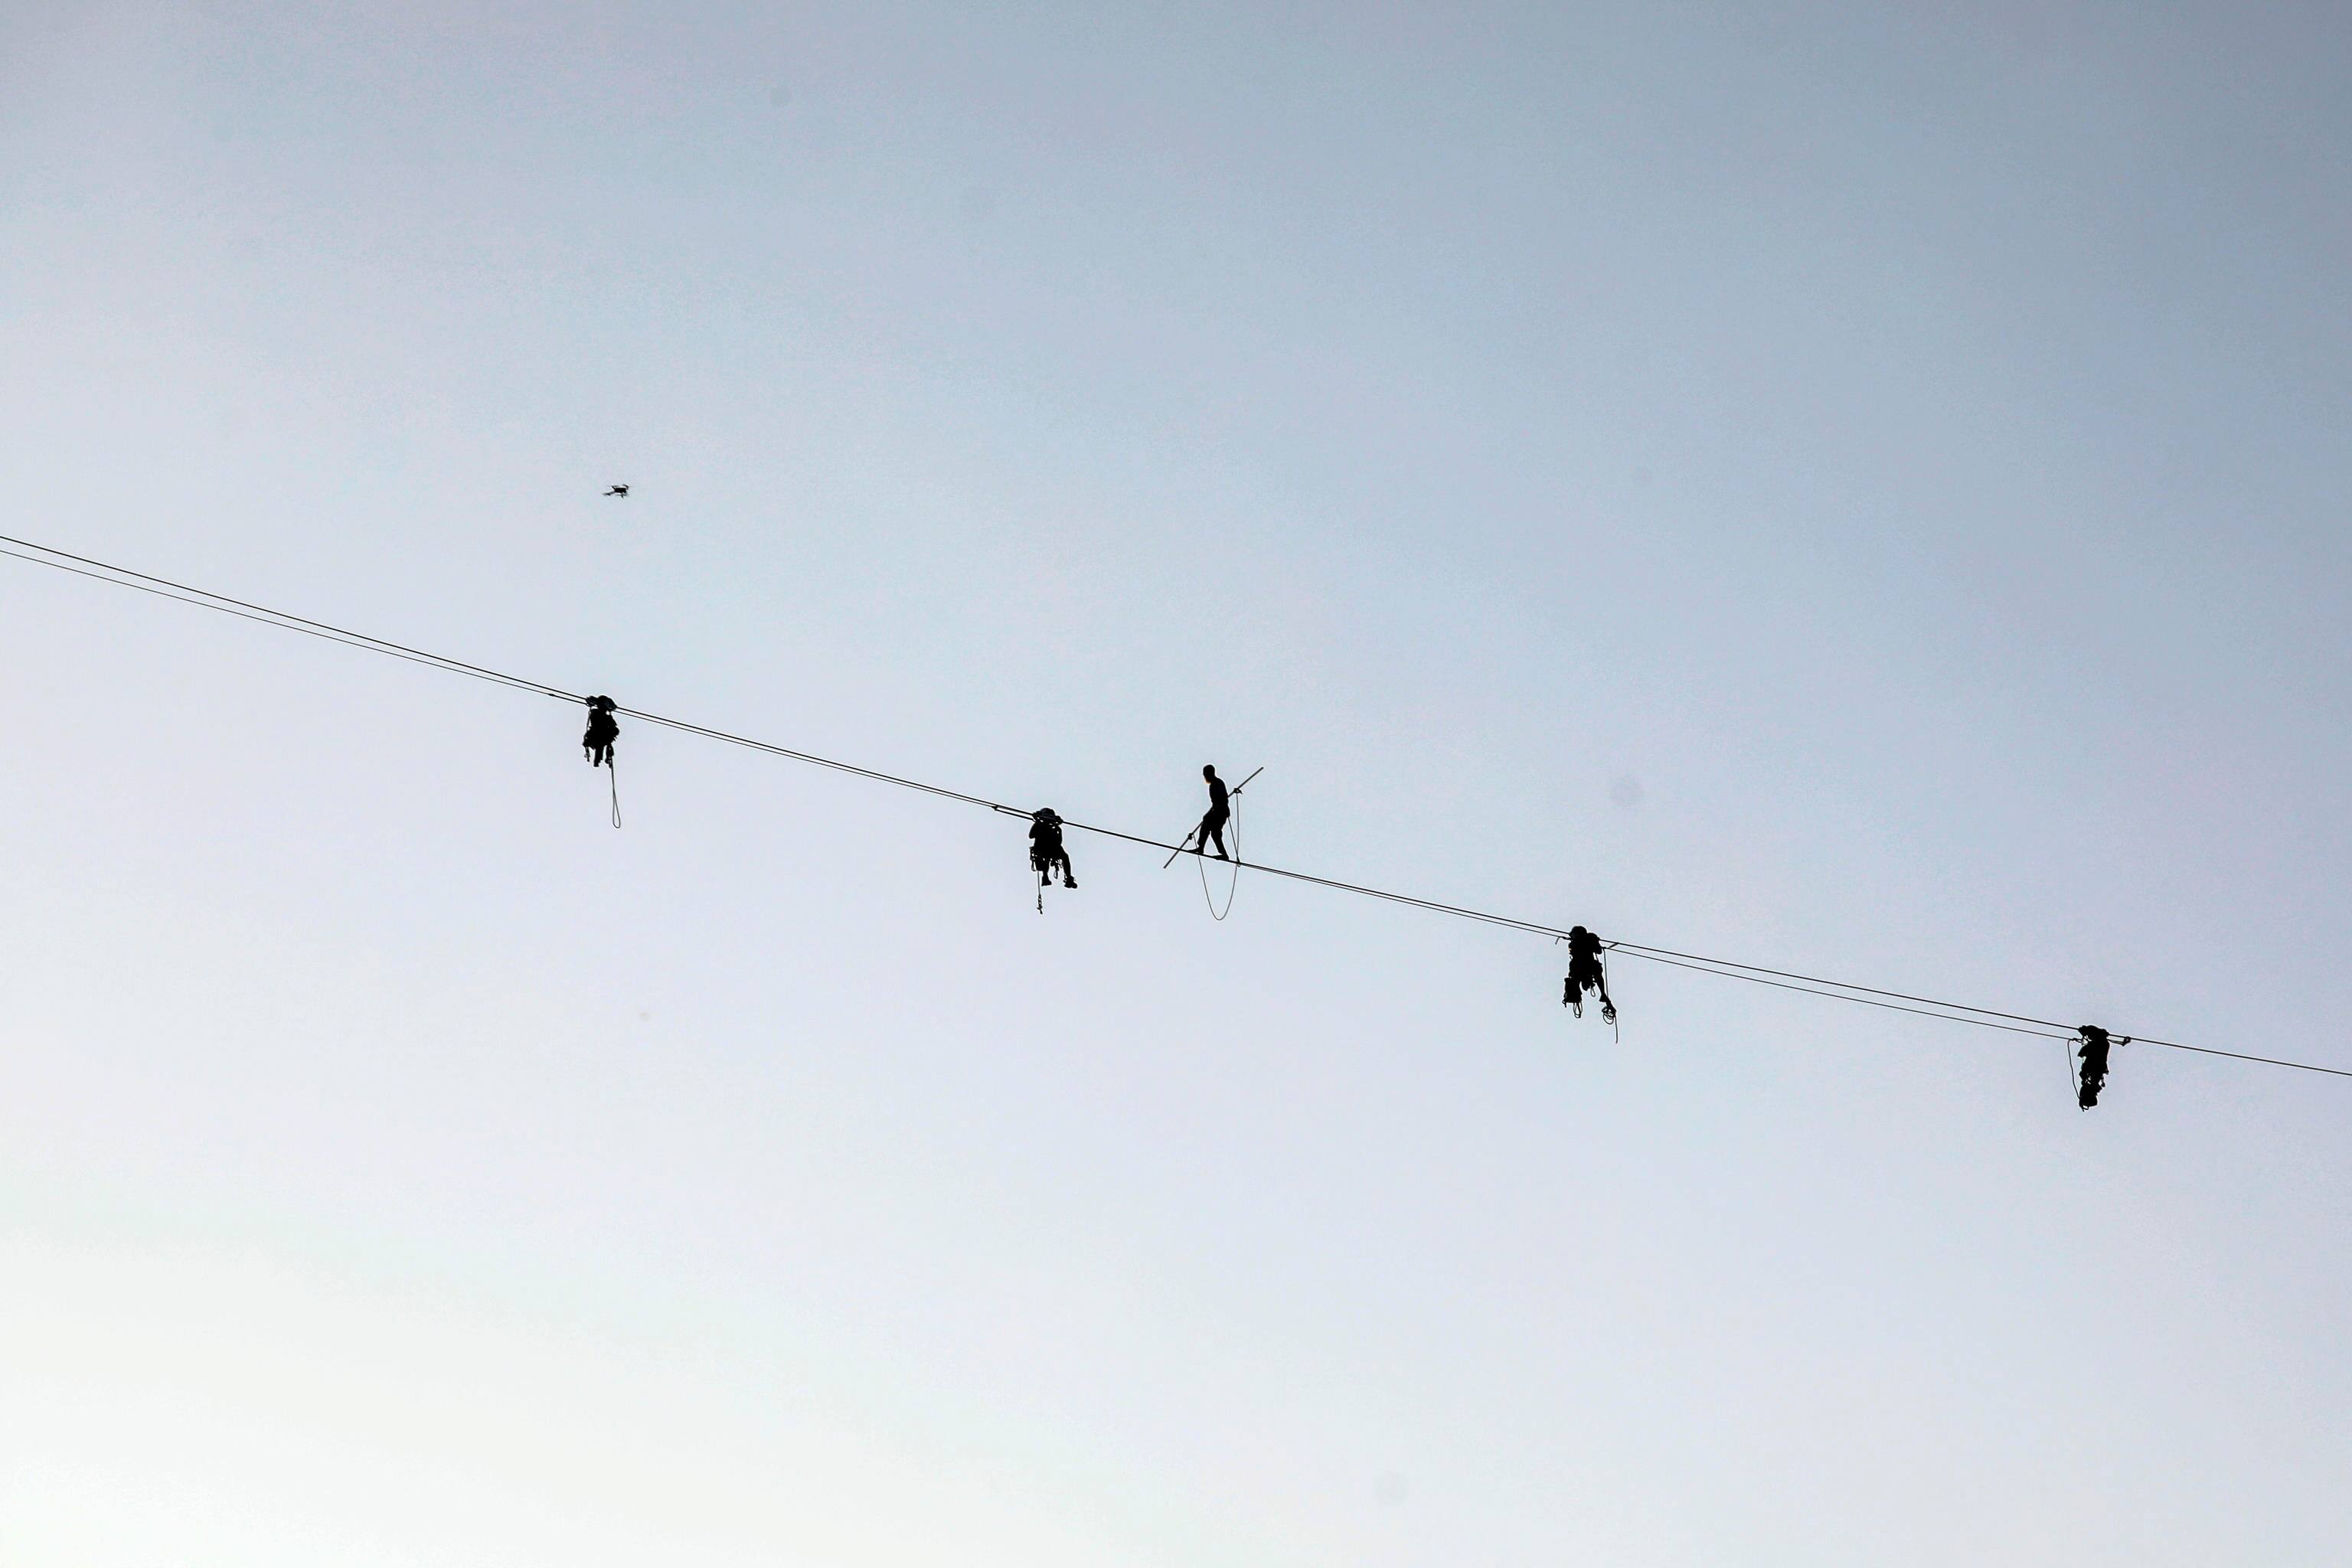 Il funambolo Andrea Loreni si cimenta nella prima traversata funambolica camminando a 140 metri di altezza dal Bosco Verticale all'Unicredit Tower a Milano, 26 maggio 2023.ANSA/MOURAD BALTI TOUATI

